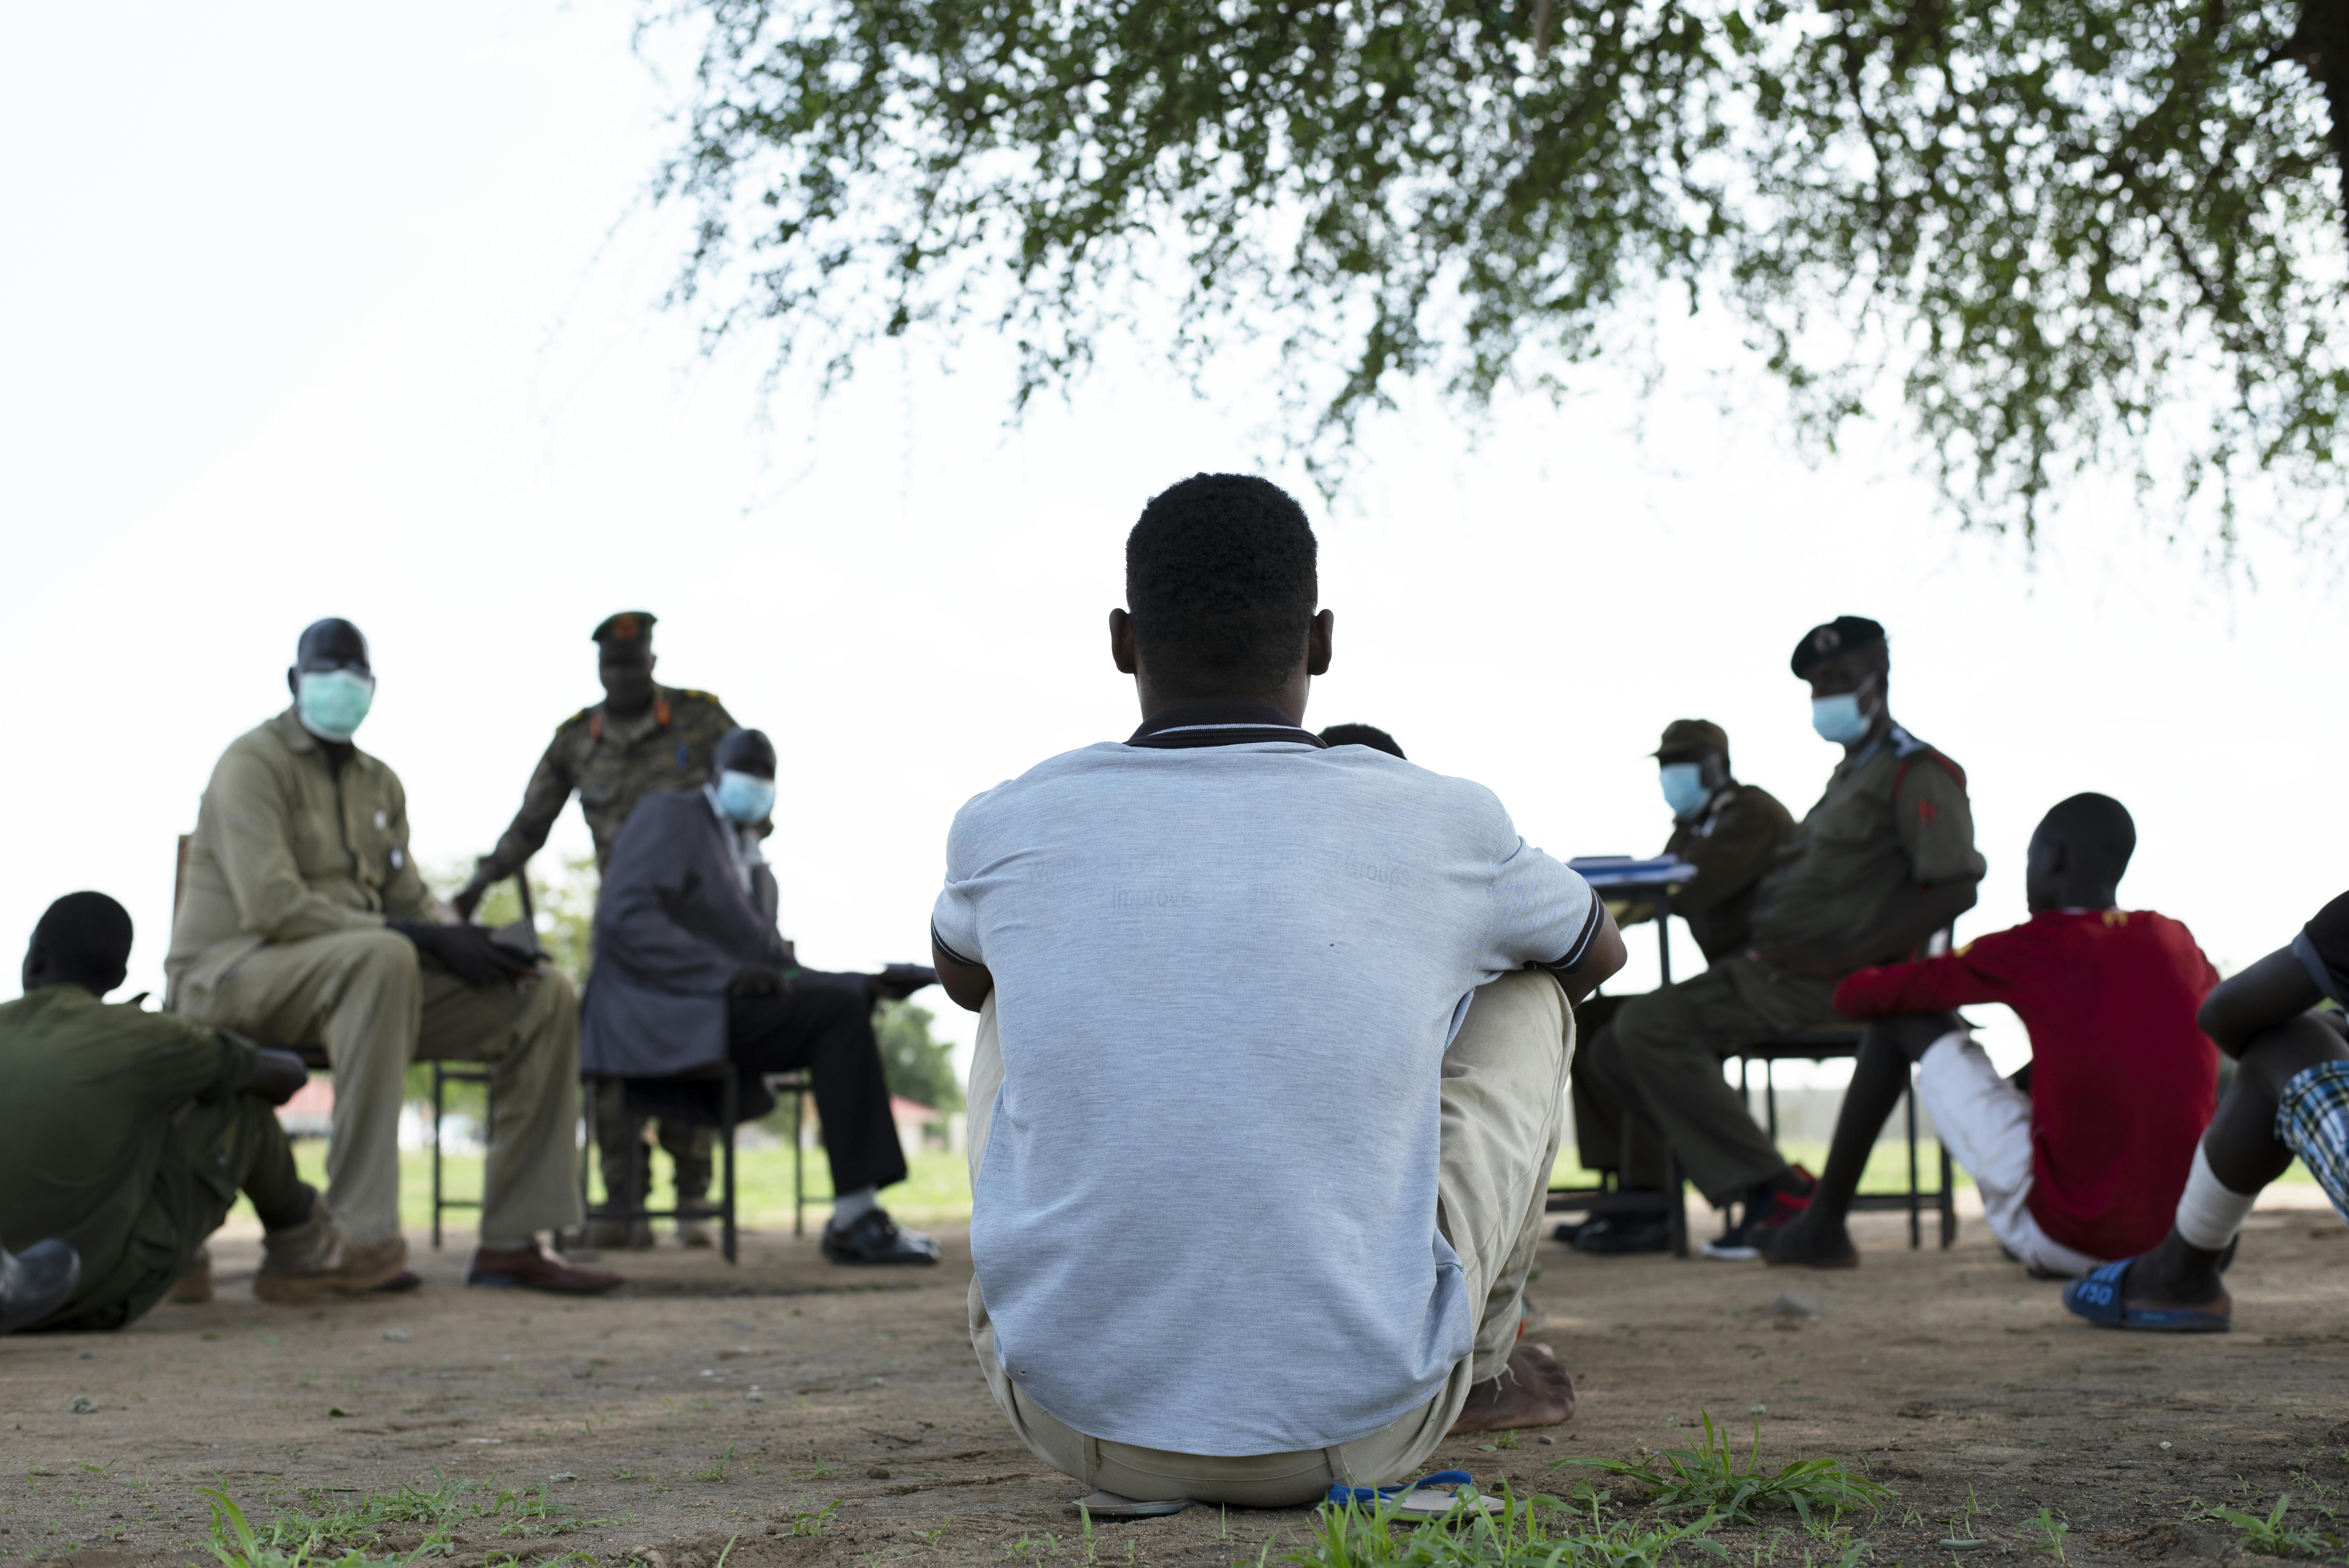 Ragazzi associati alle forze armate sono in attesa di essere liberati, mentre sullo sfondo sono in corso le trattative tra rappresentanti dell'UNICEF, della Missione delle Nazioni Unite in Sud Sudan (UNMISS) e della Commissione nazionale per il disarmo e la smobilitazione e le Forze di difesa popolare del Sud Sudan (SSPDF)